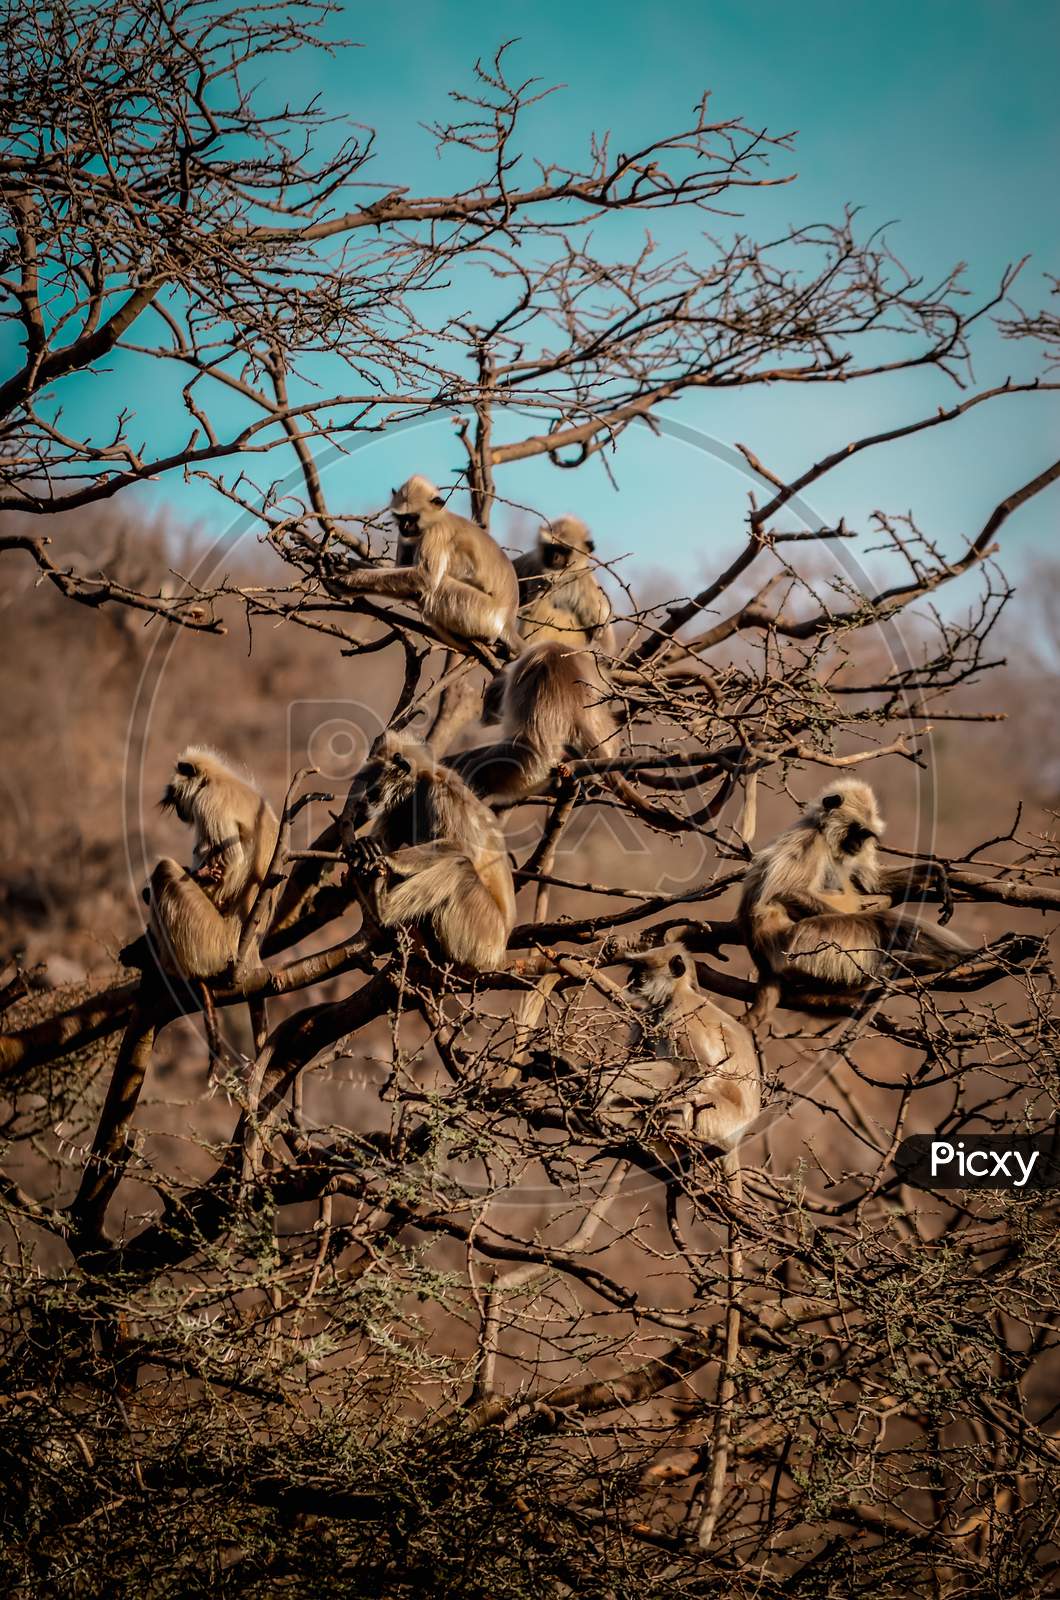 Groups of monkey